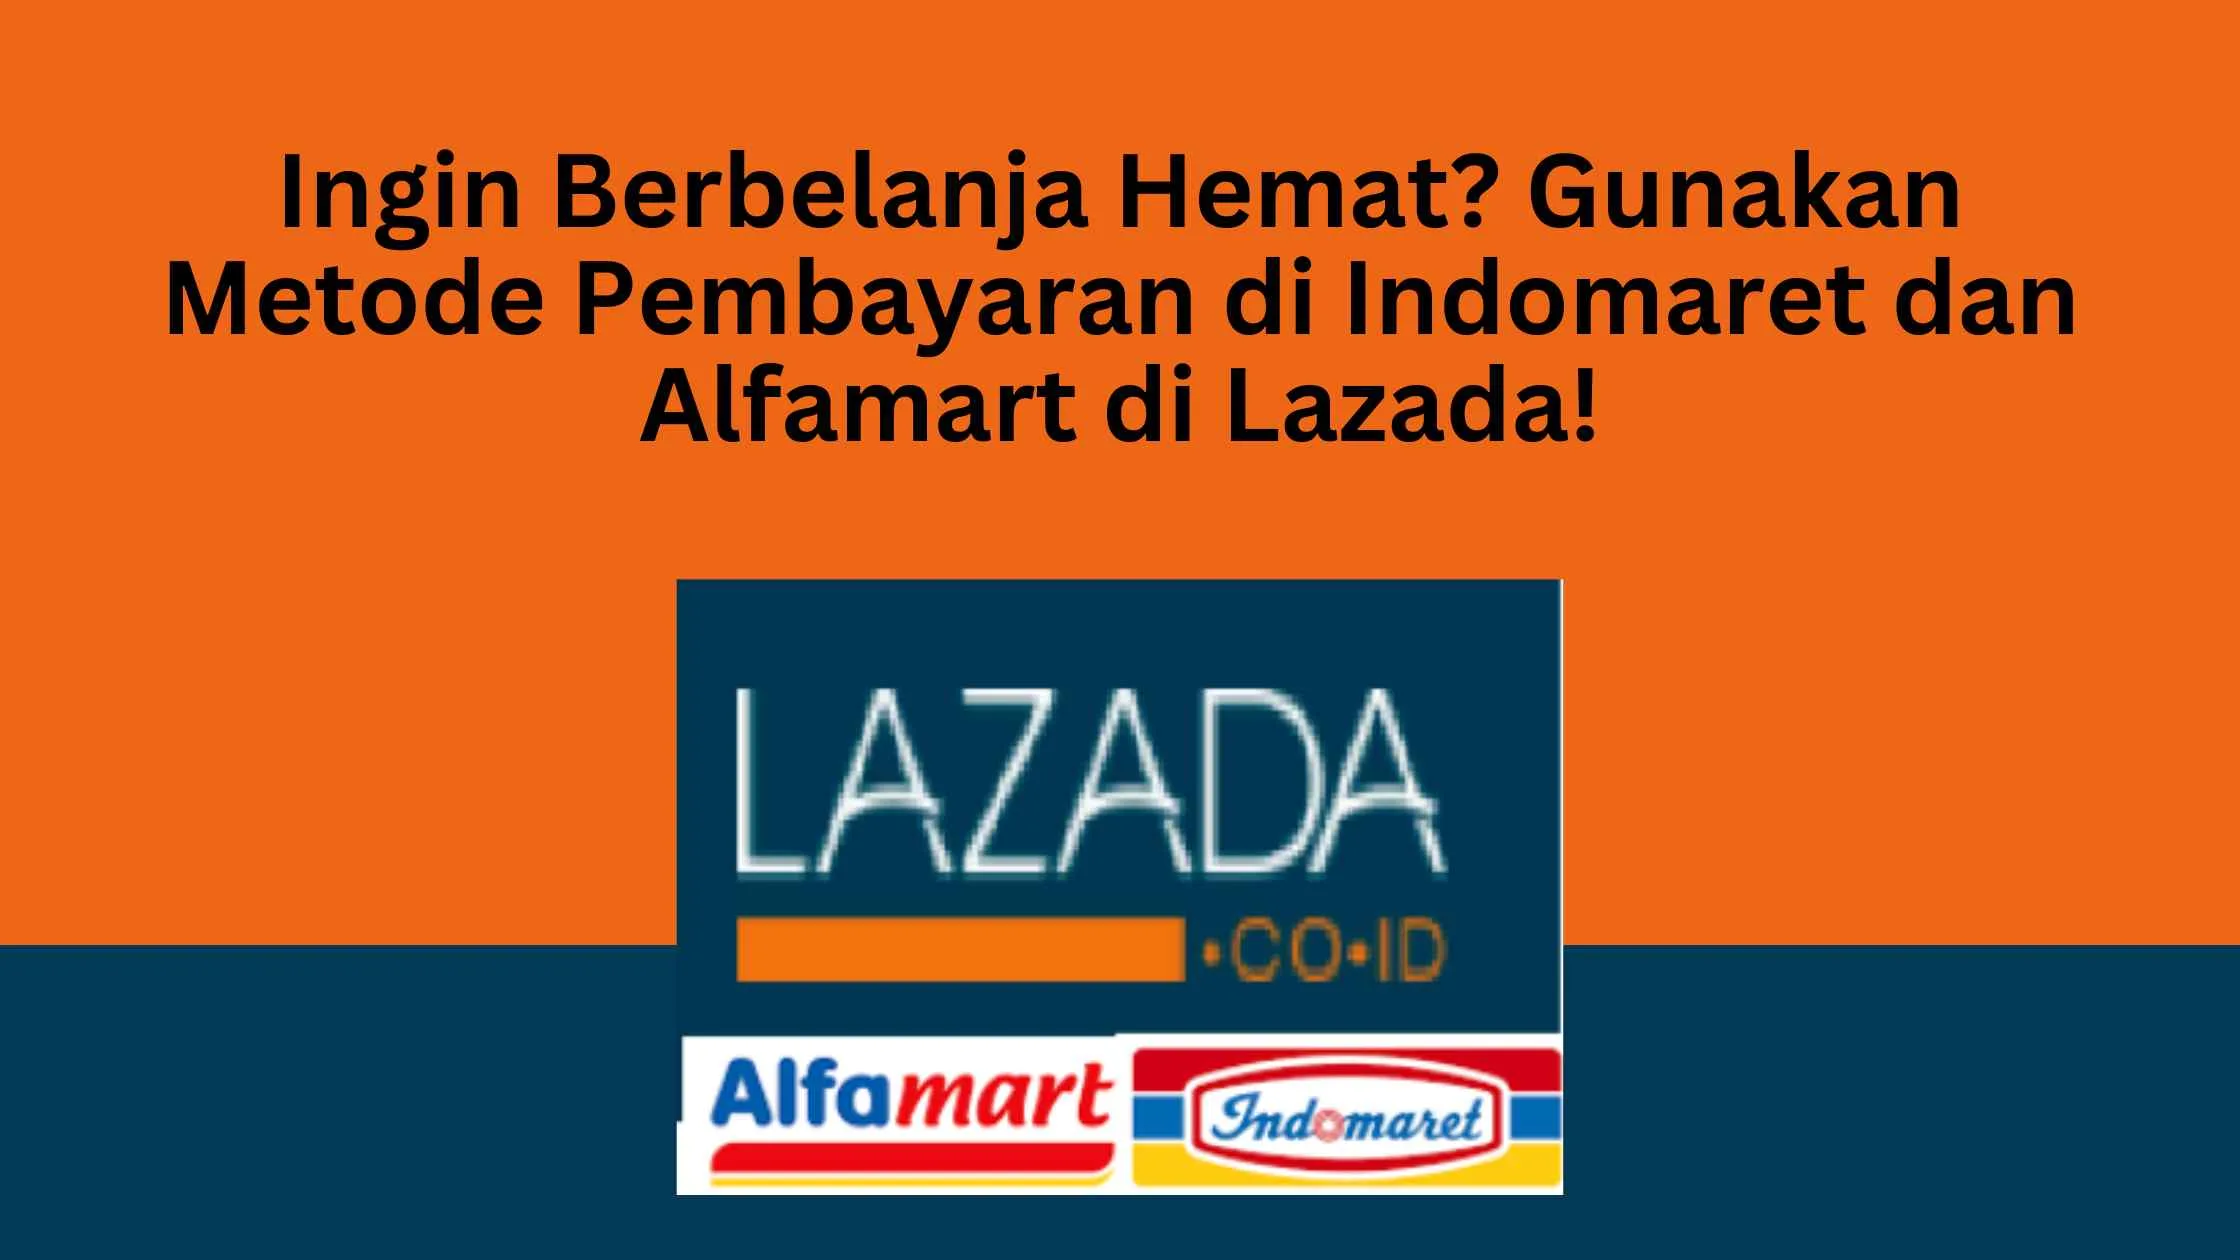 Ingin Berbelanja Hemat? Gunakan Metode Pembayaran di Indomaret dan Alfamart di Lazada!